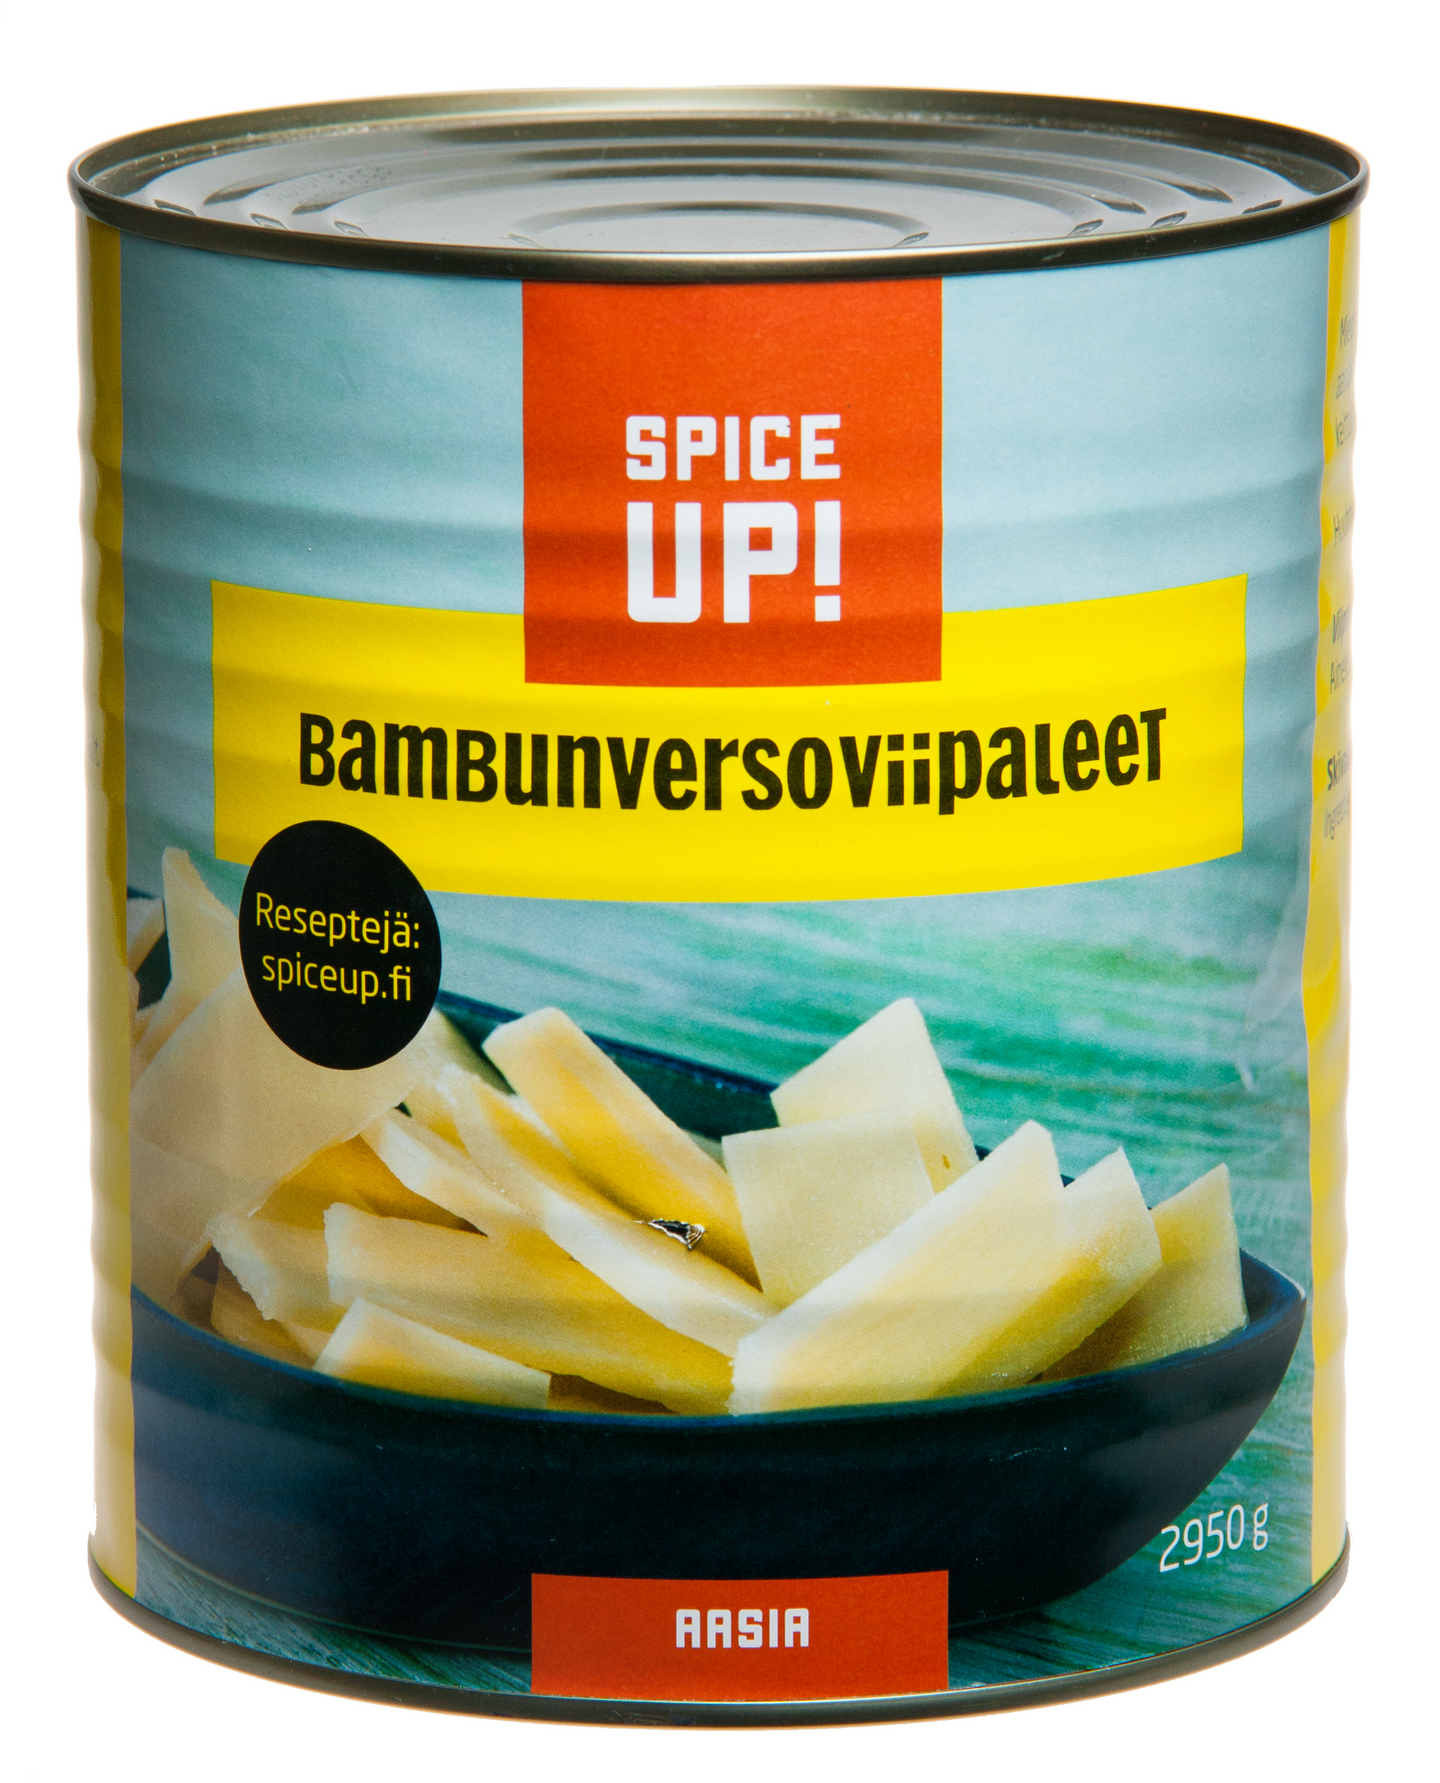 Spice Up! Bambunversoviipale 2950/1800g